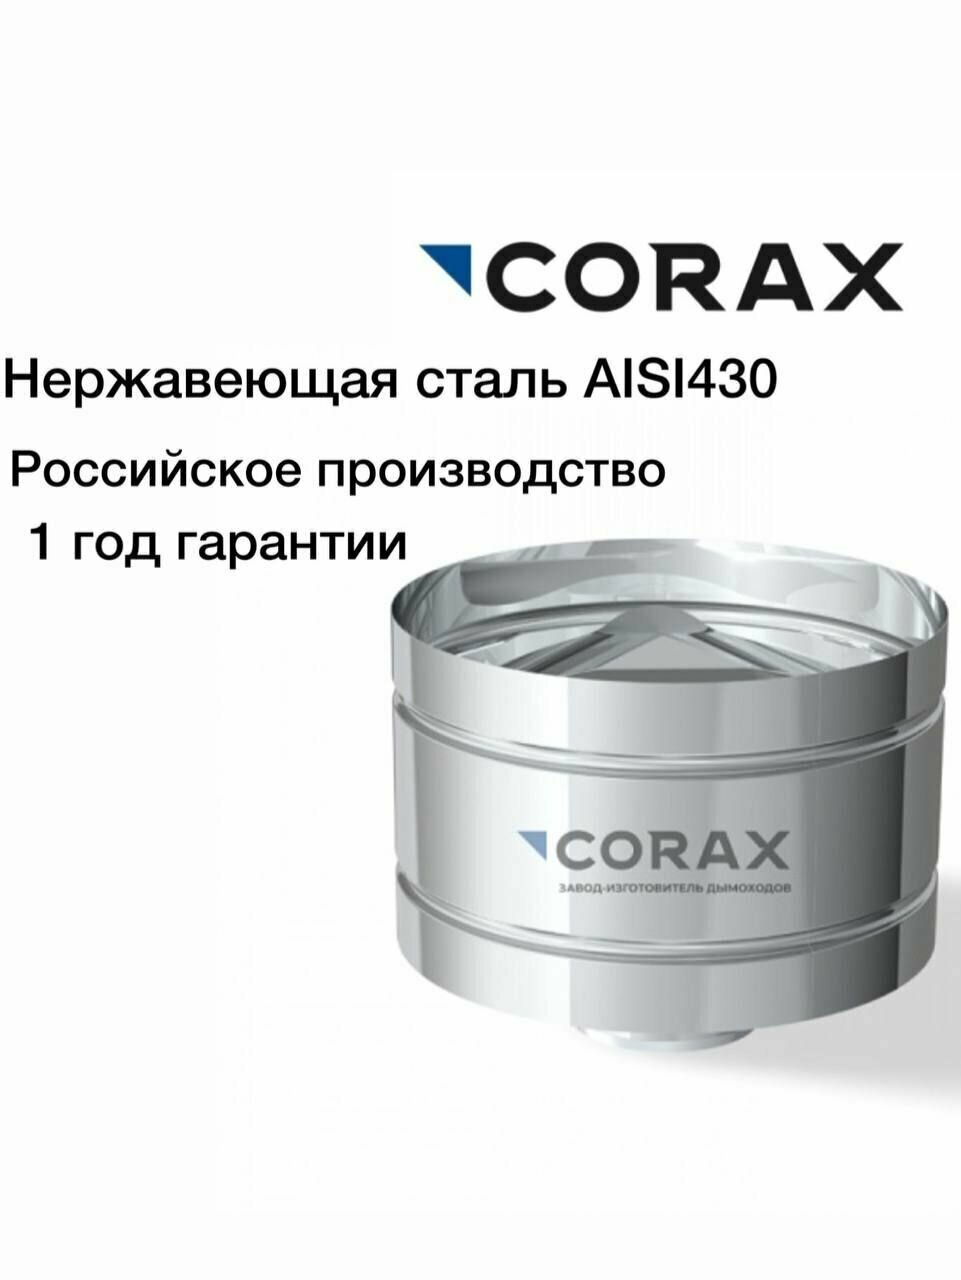 Зонт-К с ветрозащитой нержавеющий CORAX (430/05)